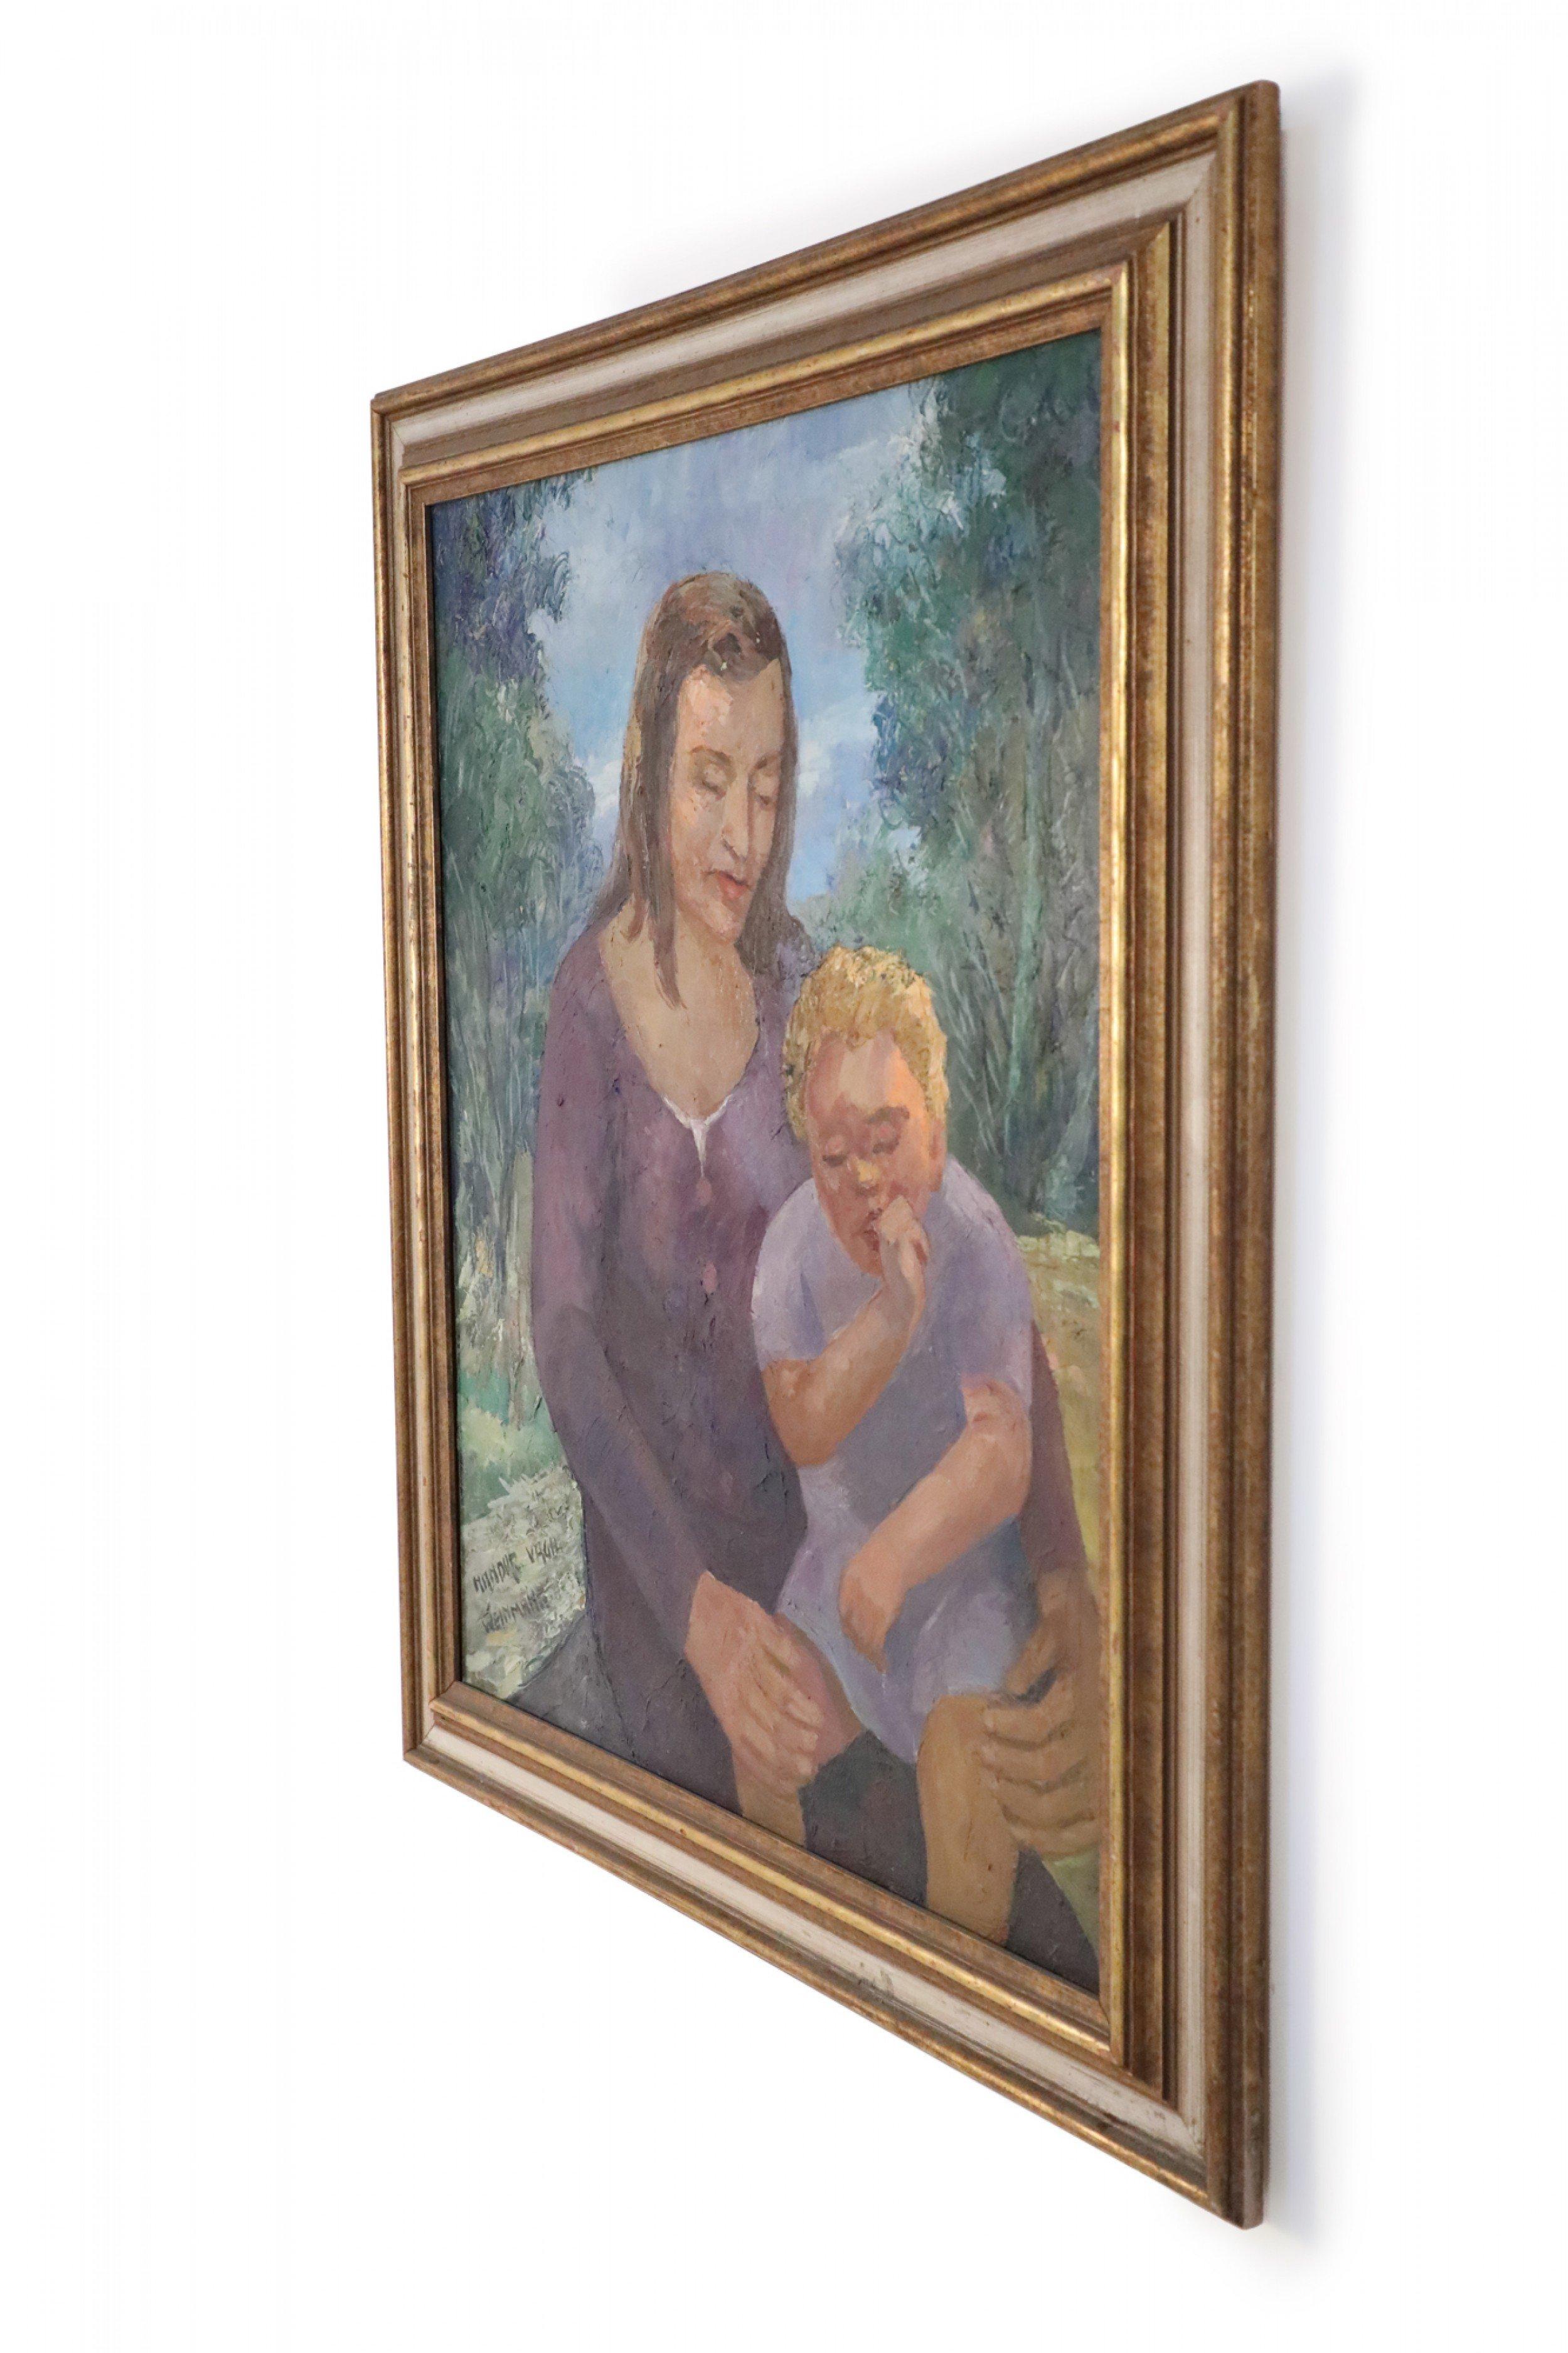 Peinture à l'huile vintage (20e siècle) représentant une femme tenant sur ses genoux un enfant suçant son pouce, sur un fond de nature, dans un cadre rectangulaire en bois doré.
   